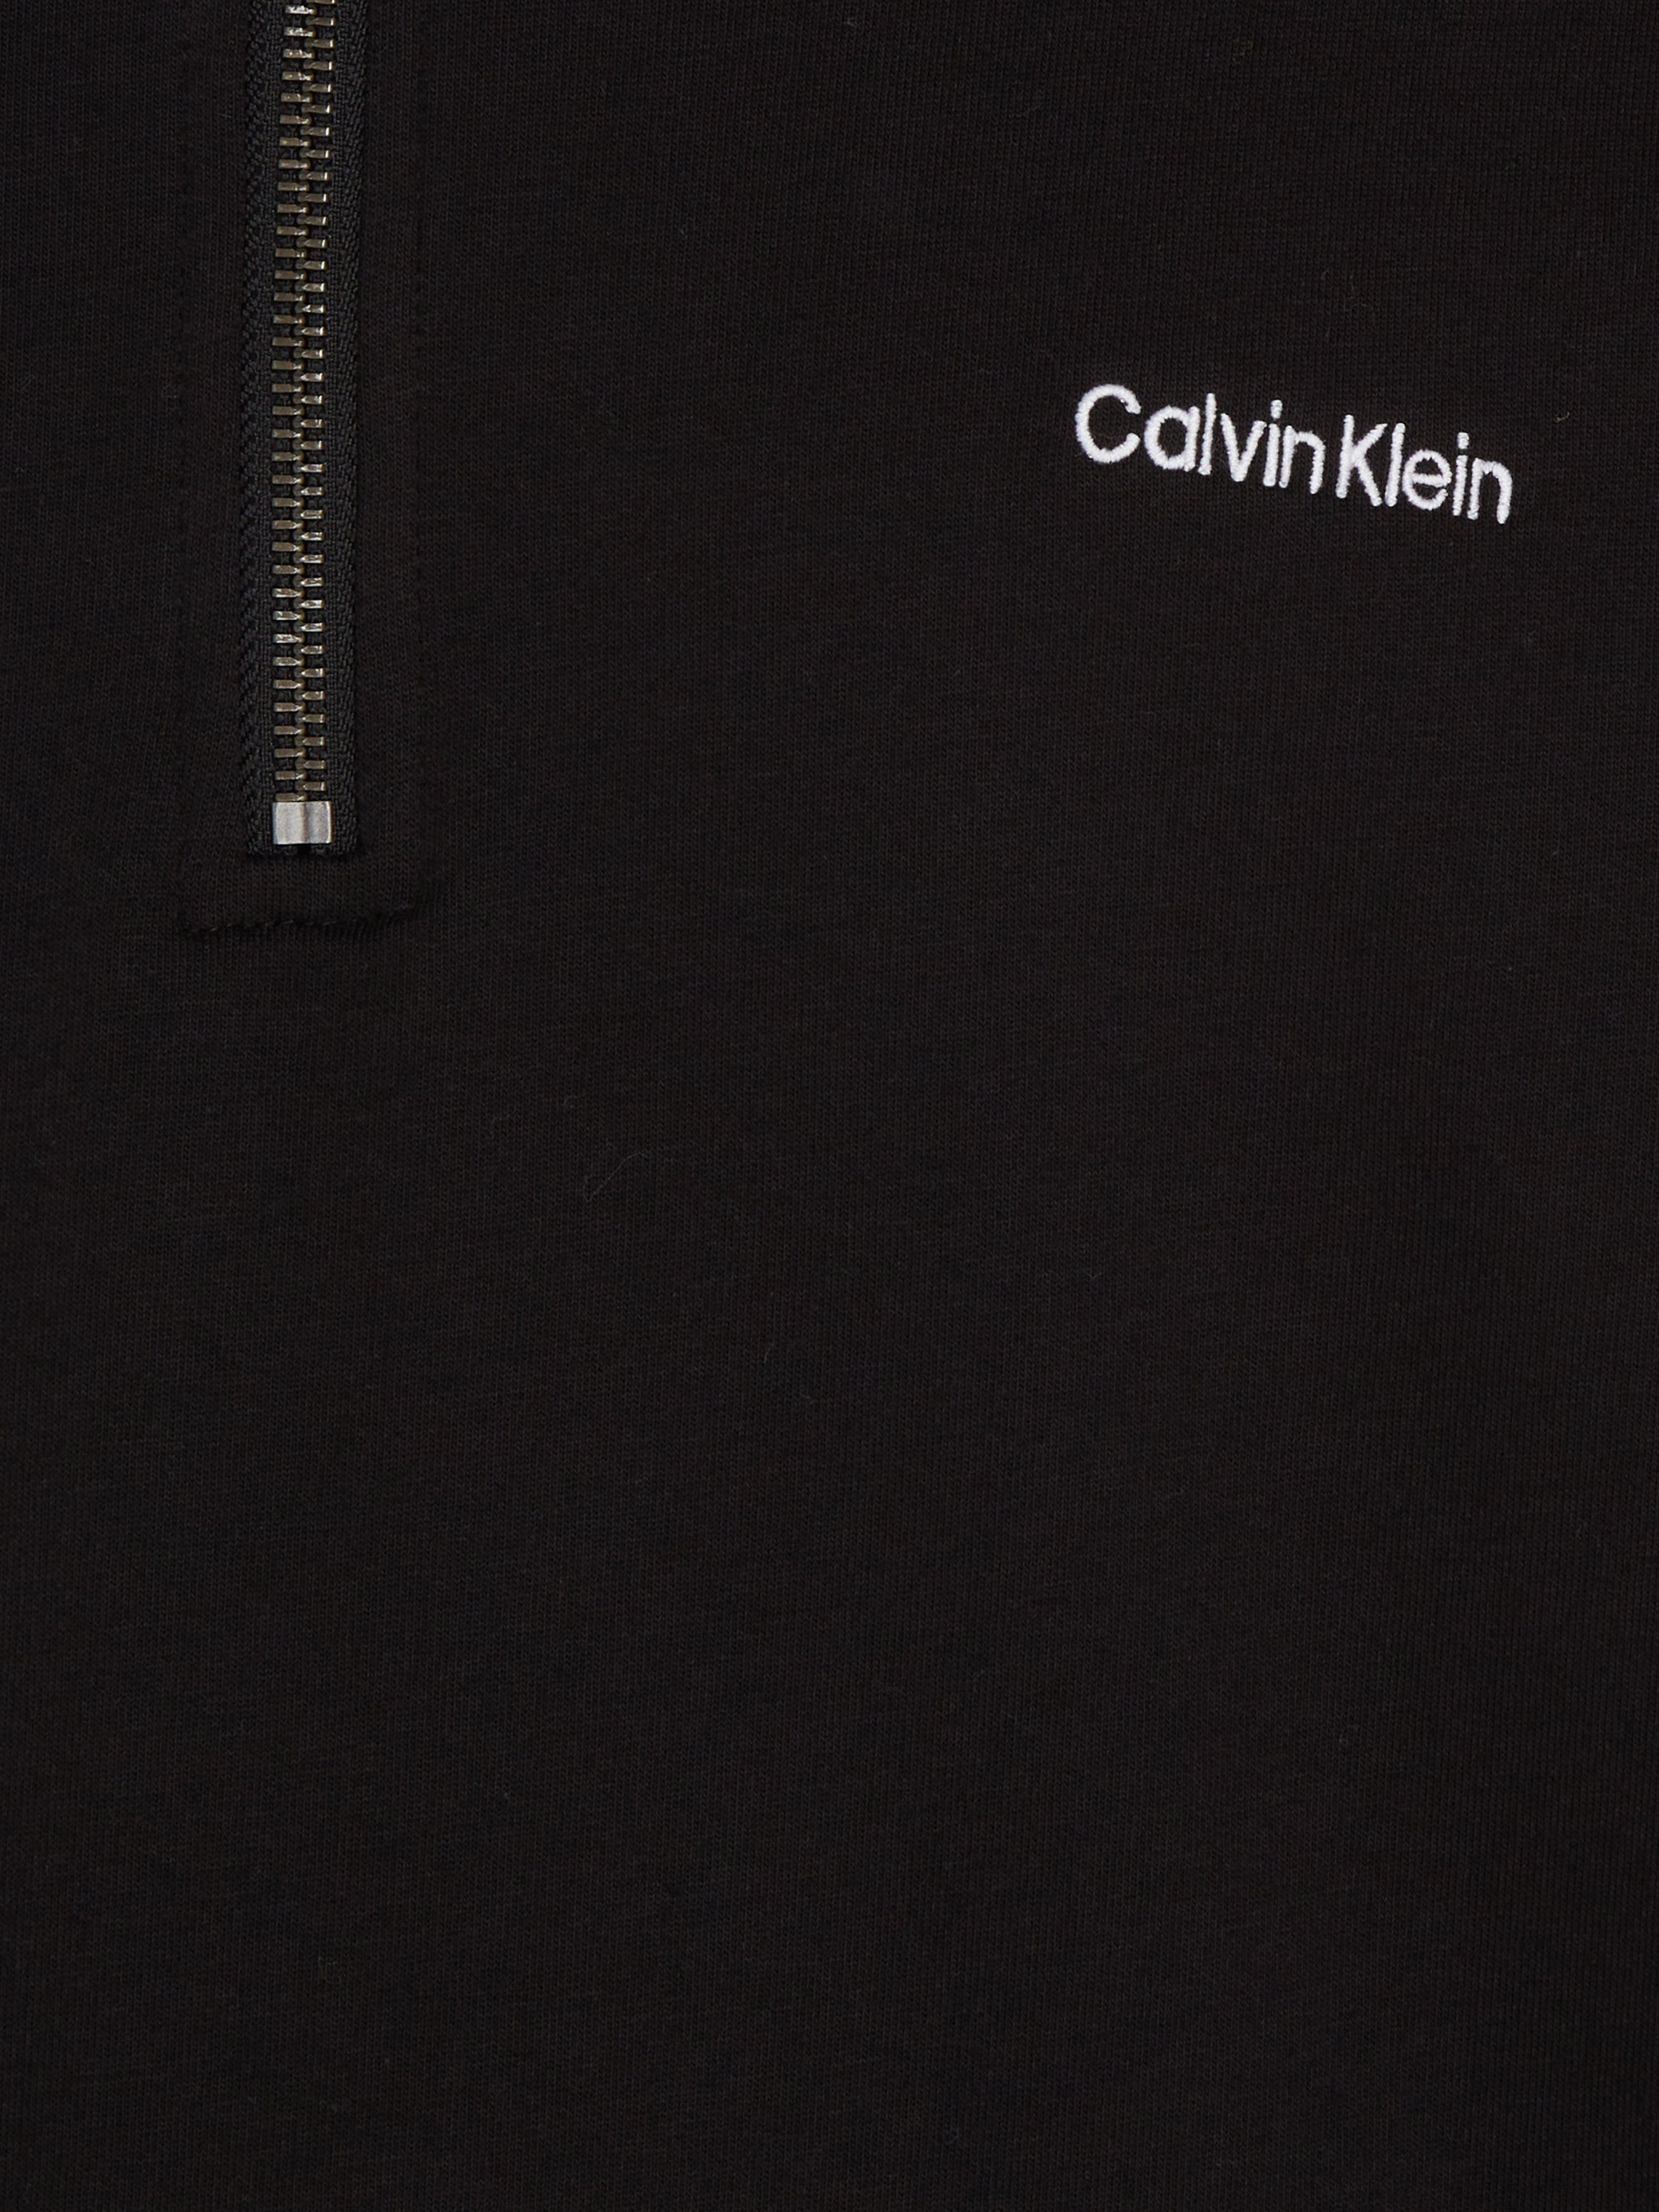 schwarz Klein Calvin mit kleinem Stehkragen Underwear Sweatjacke